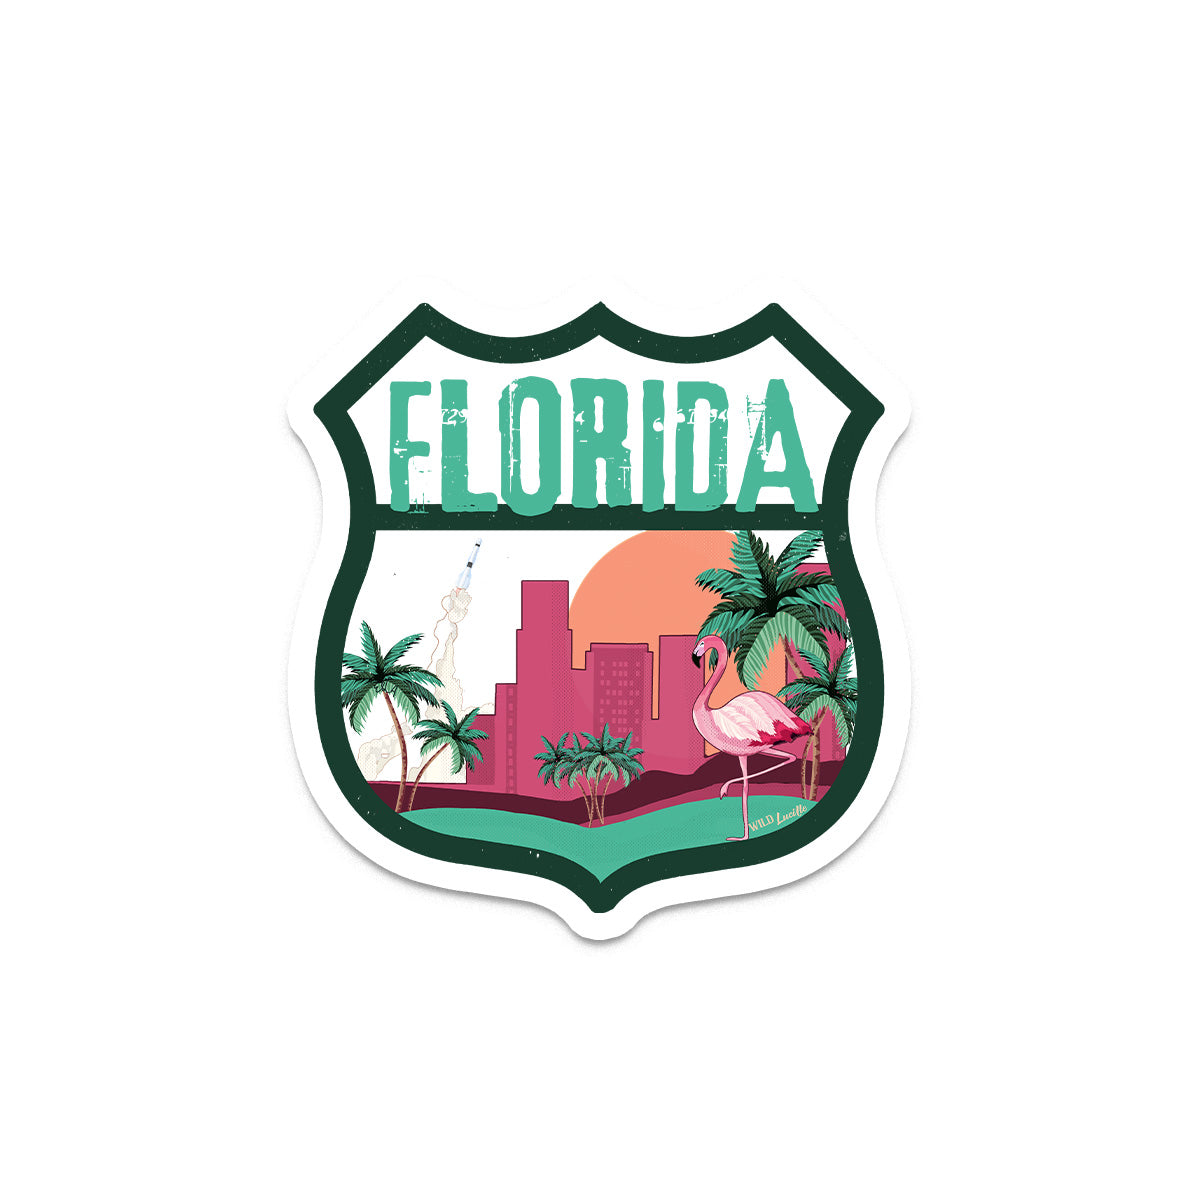 Destination Florida - Vinyl Souvenir Sticker Decals